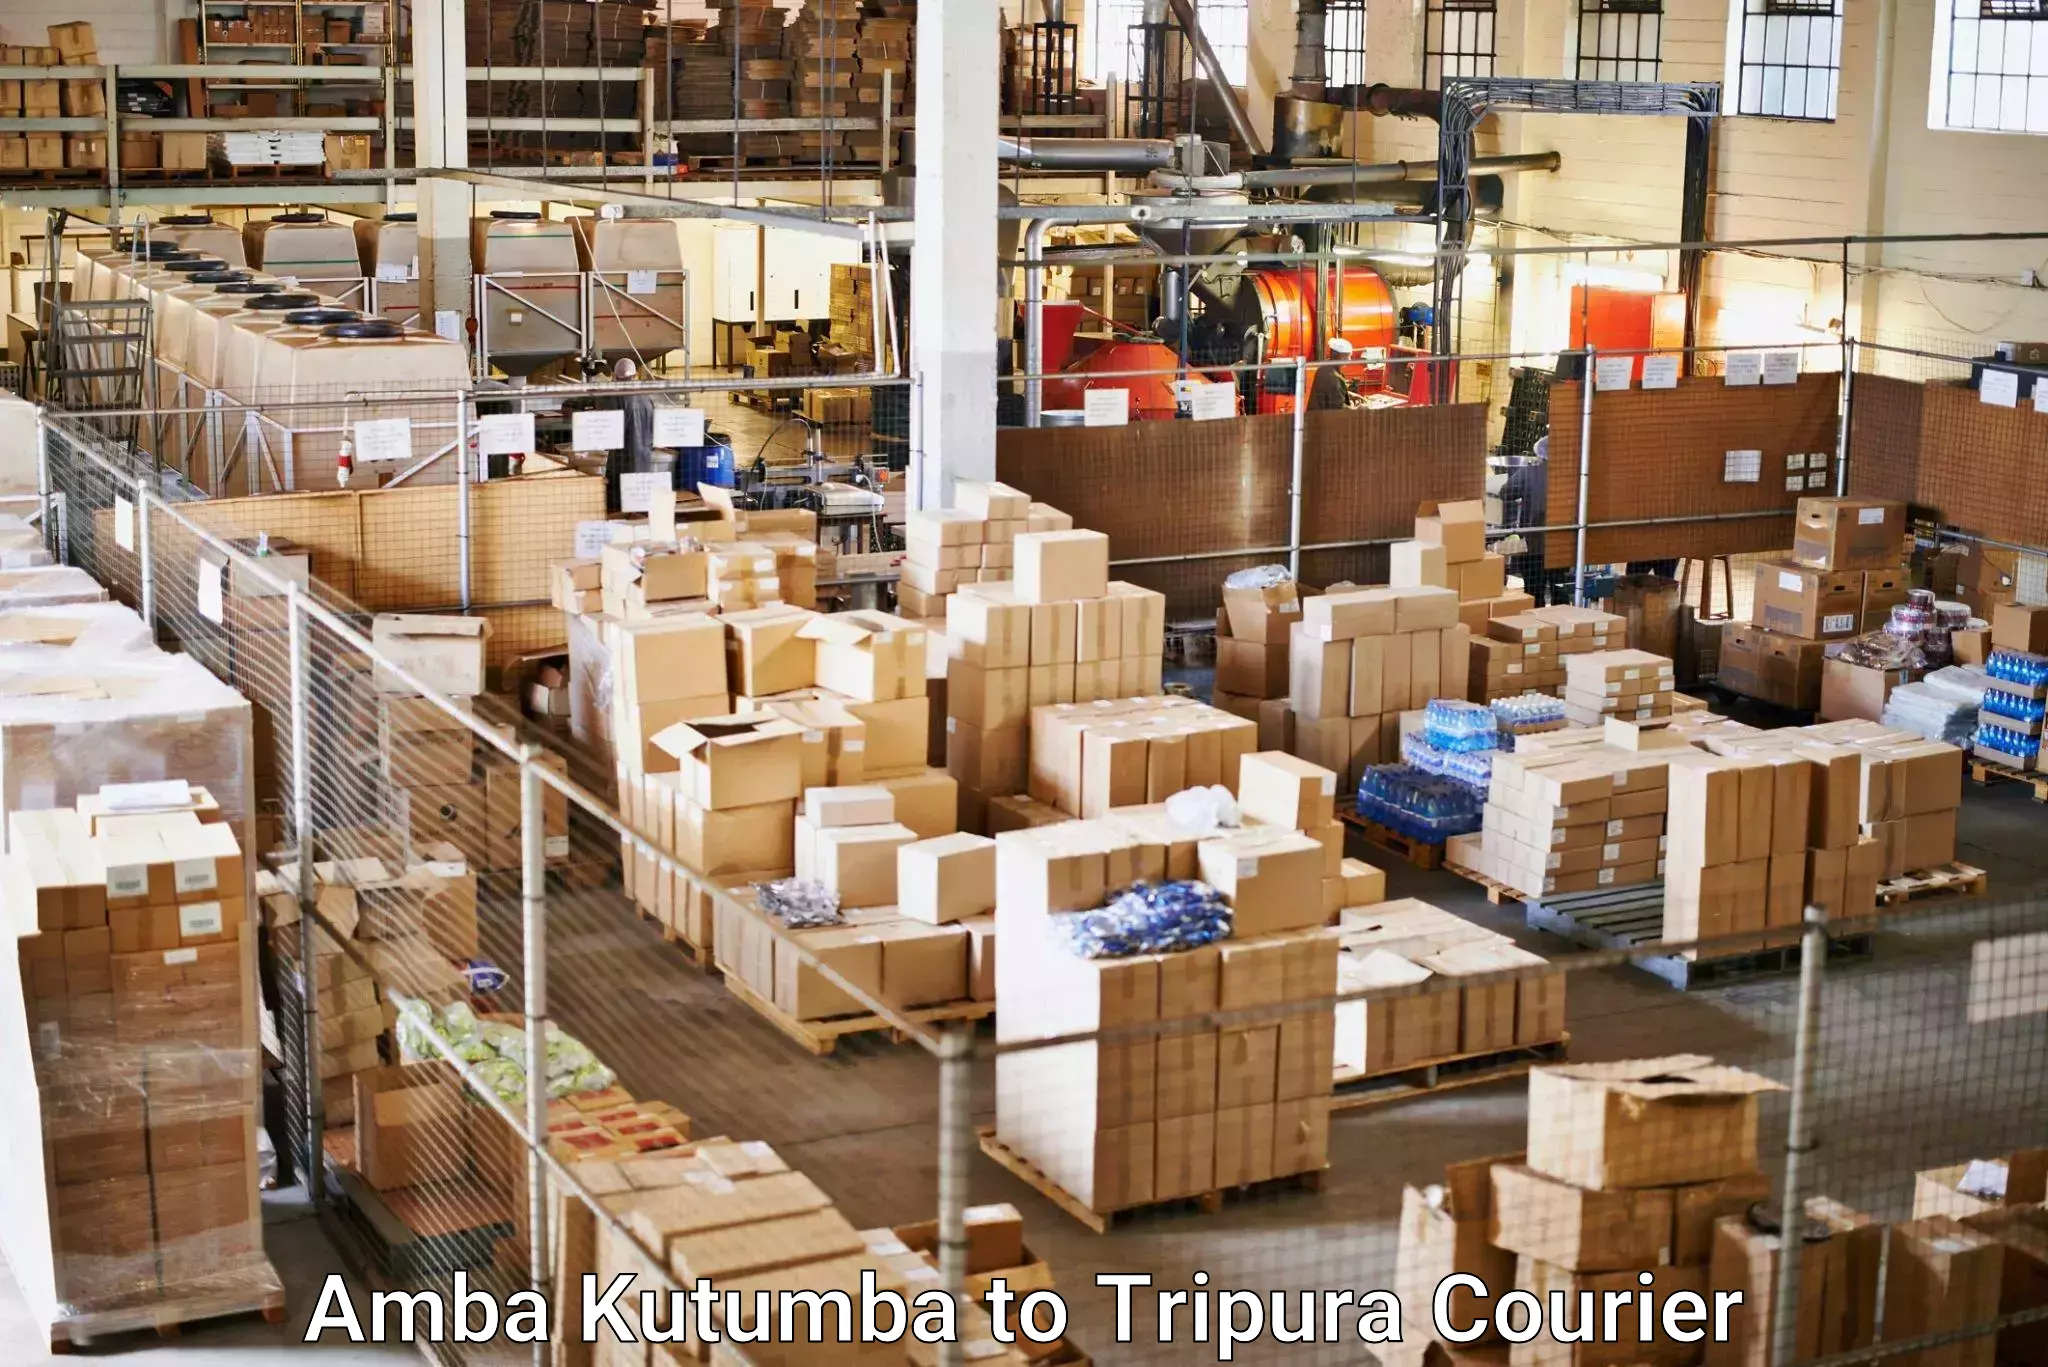 Automated shipping processes Amba Kutumba to Aambasa